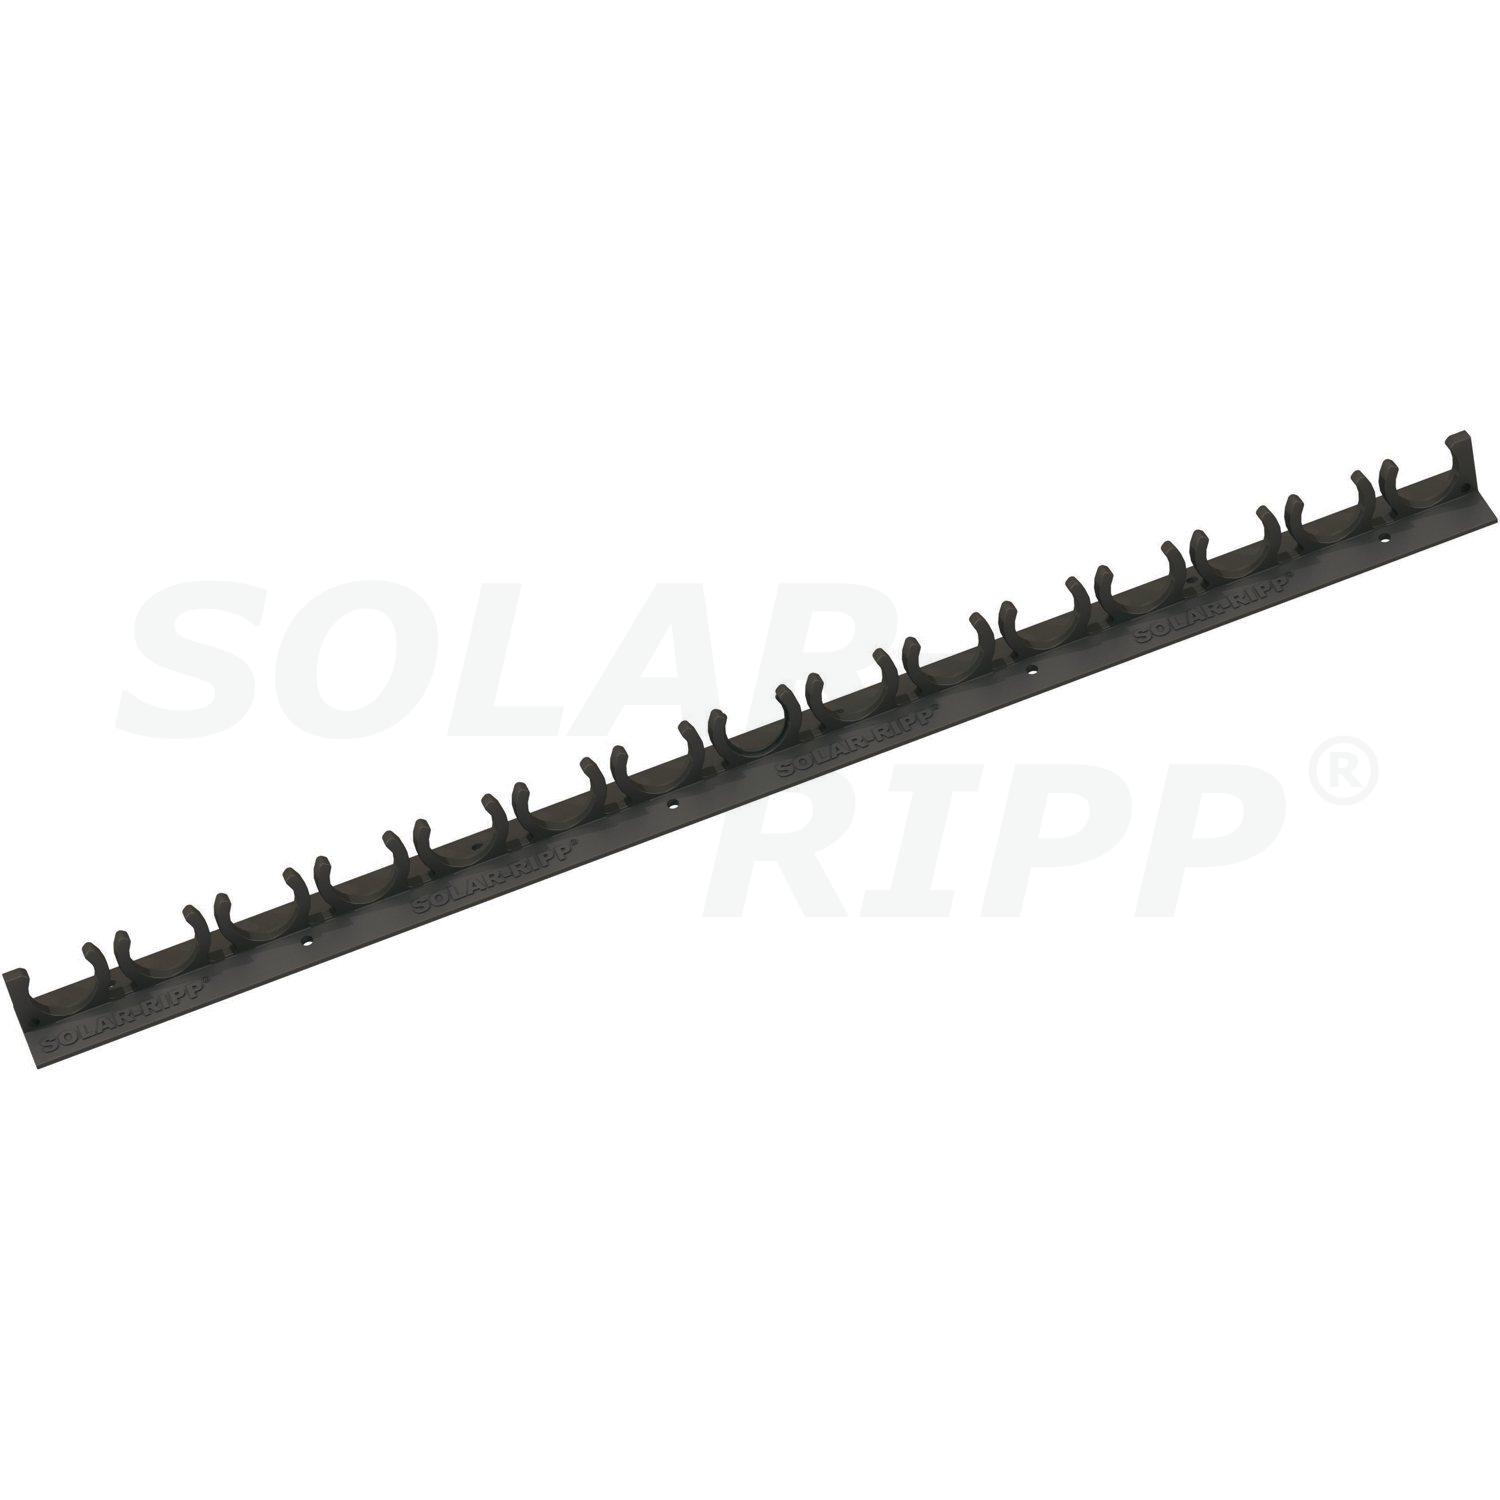 SOLAR-RIPP ® clip bar (distanziatore)